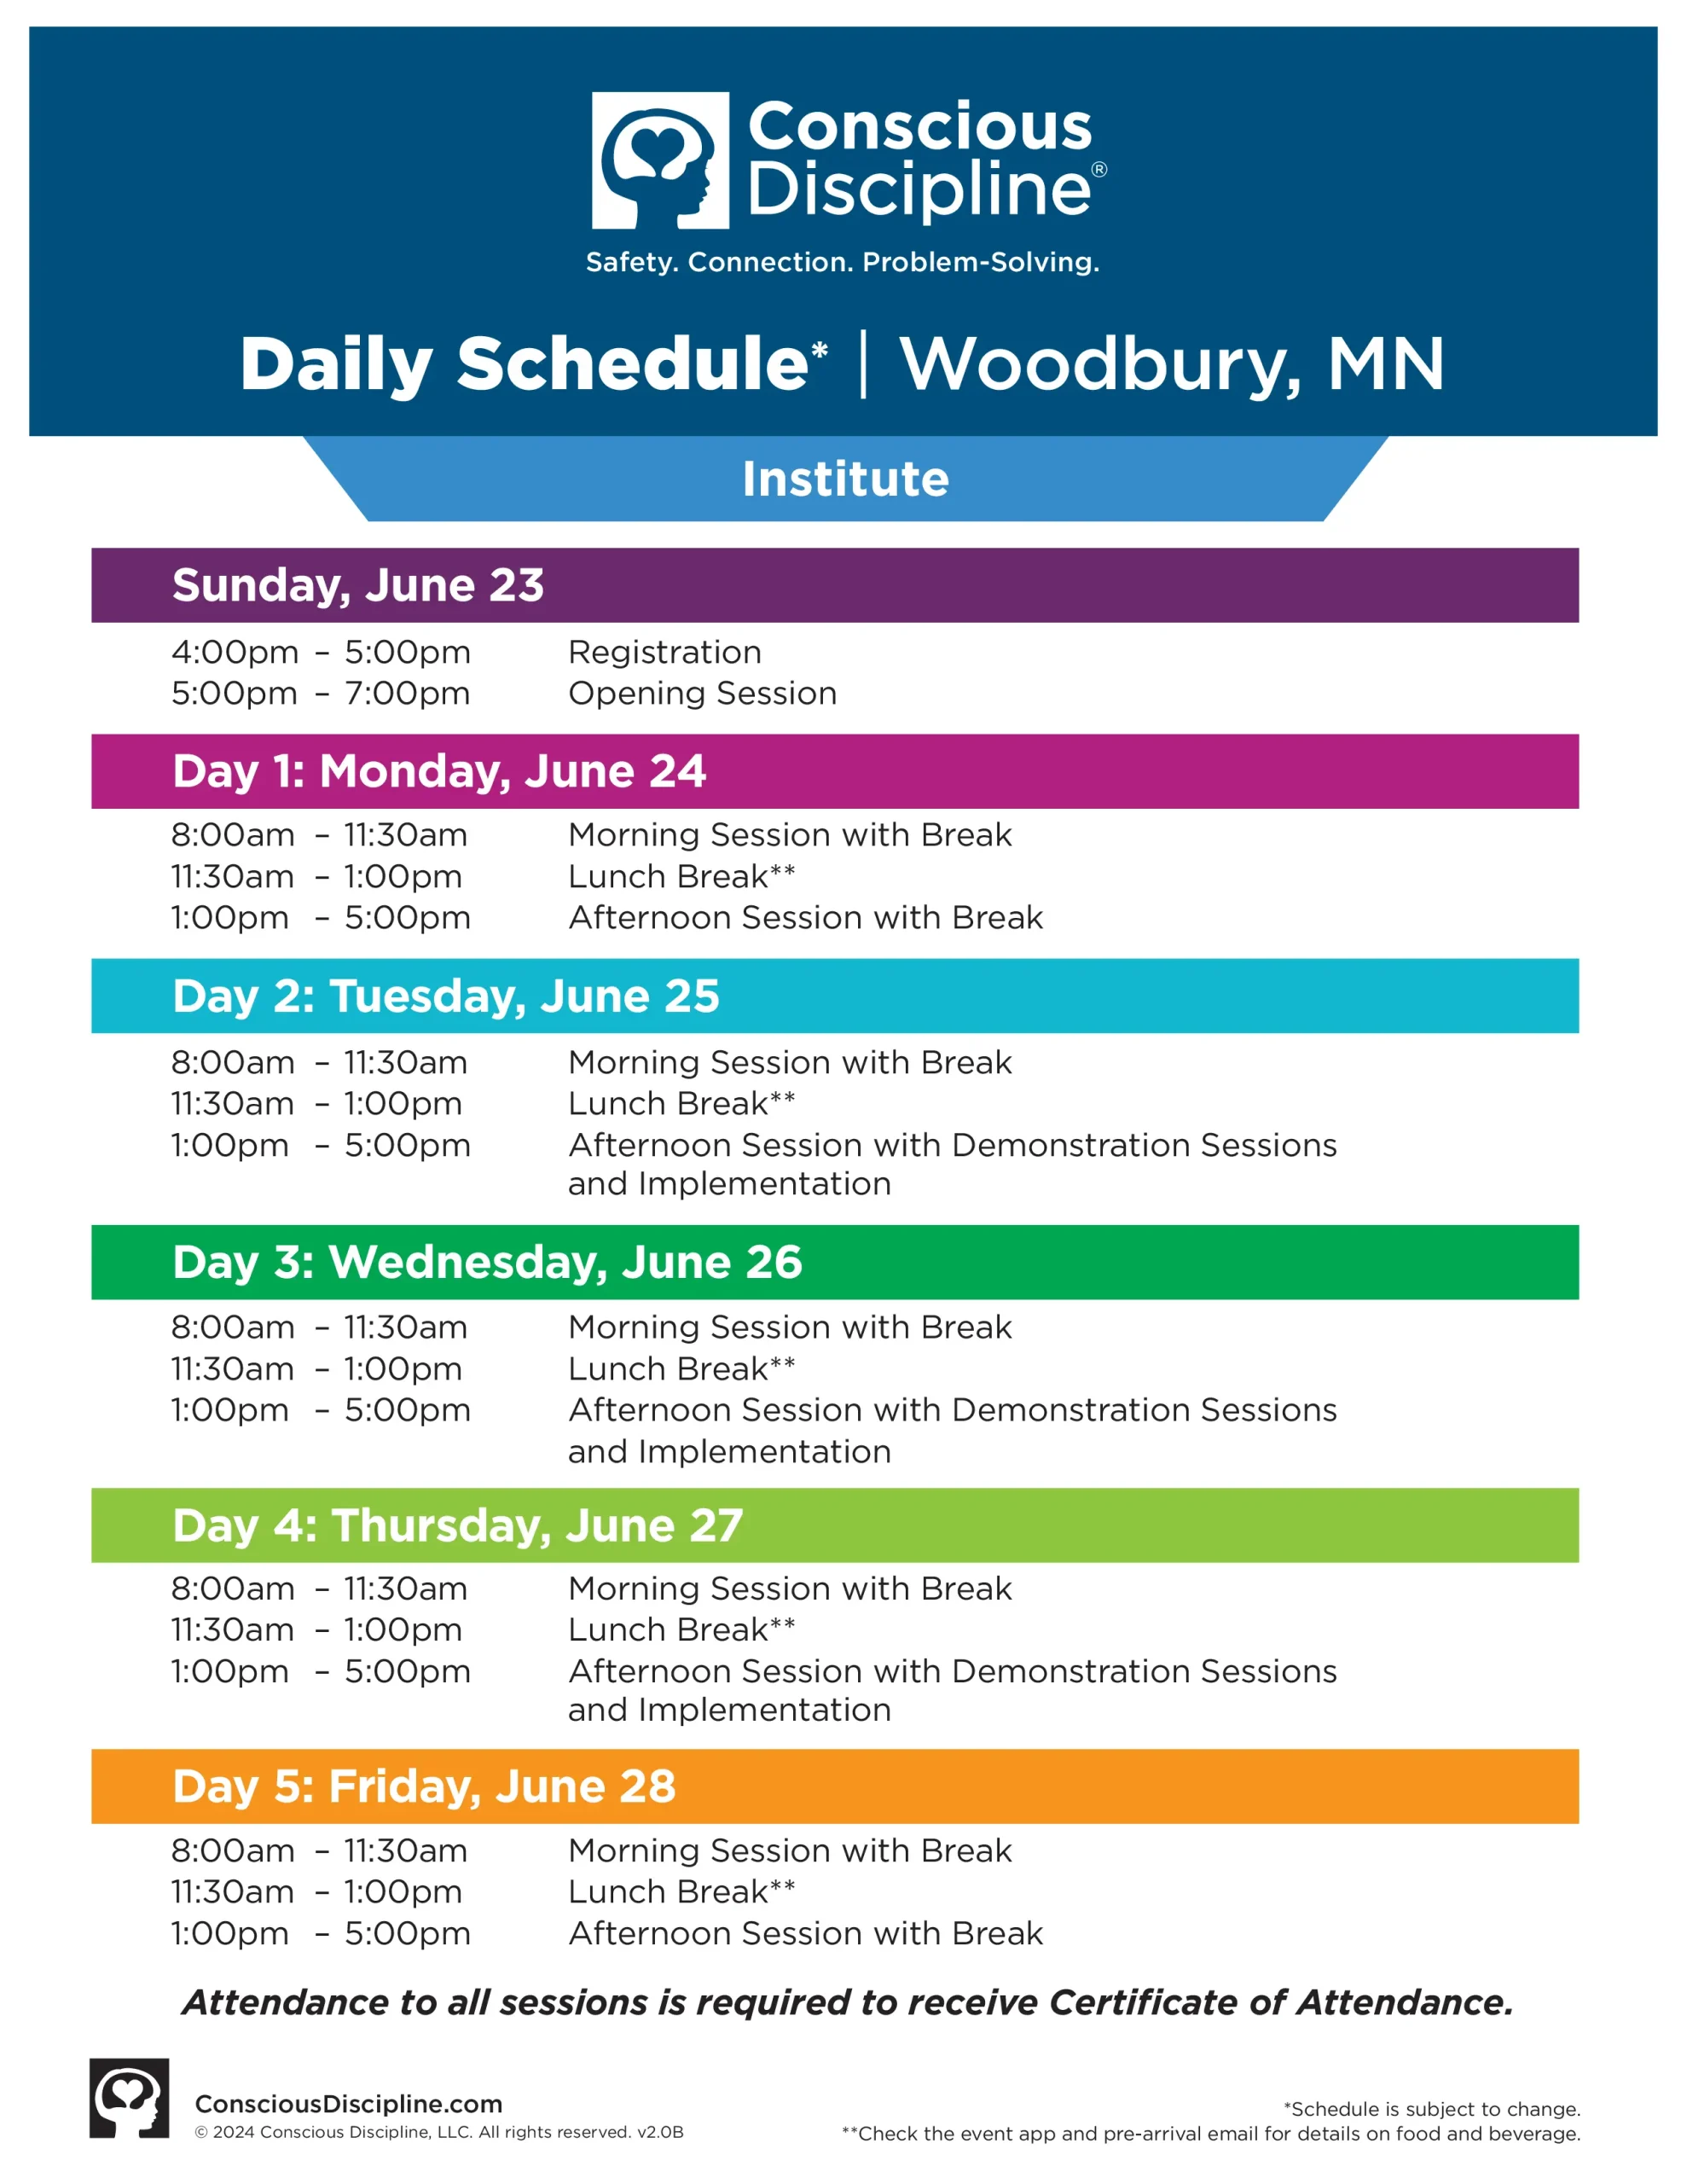 Woodbury, MN schedule